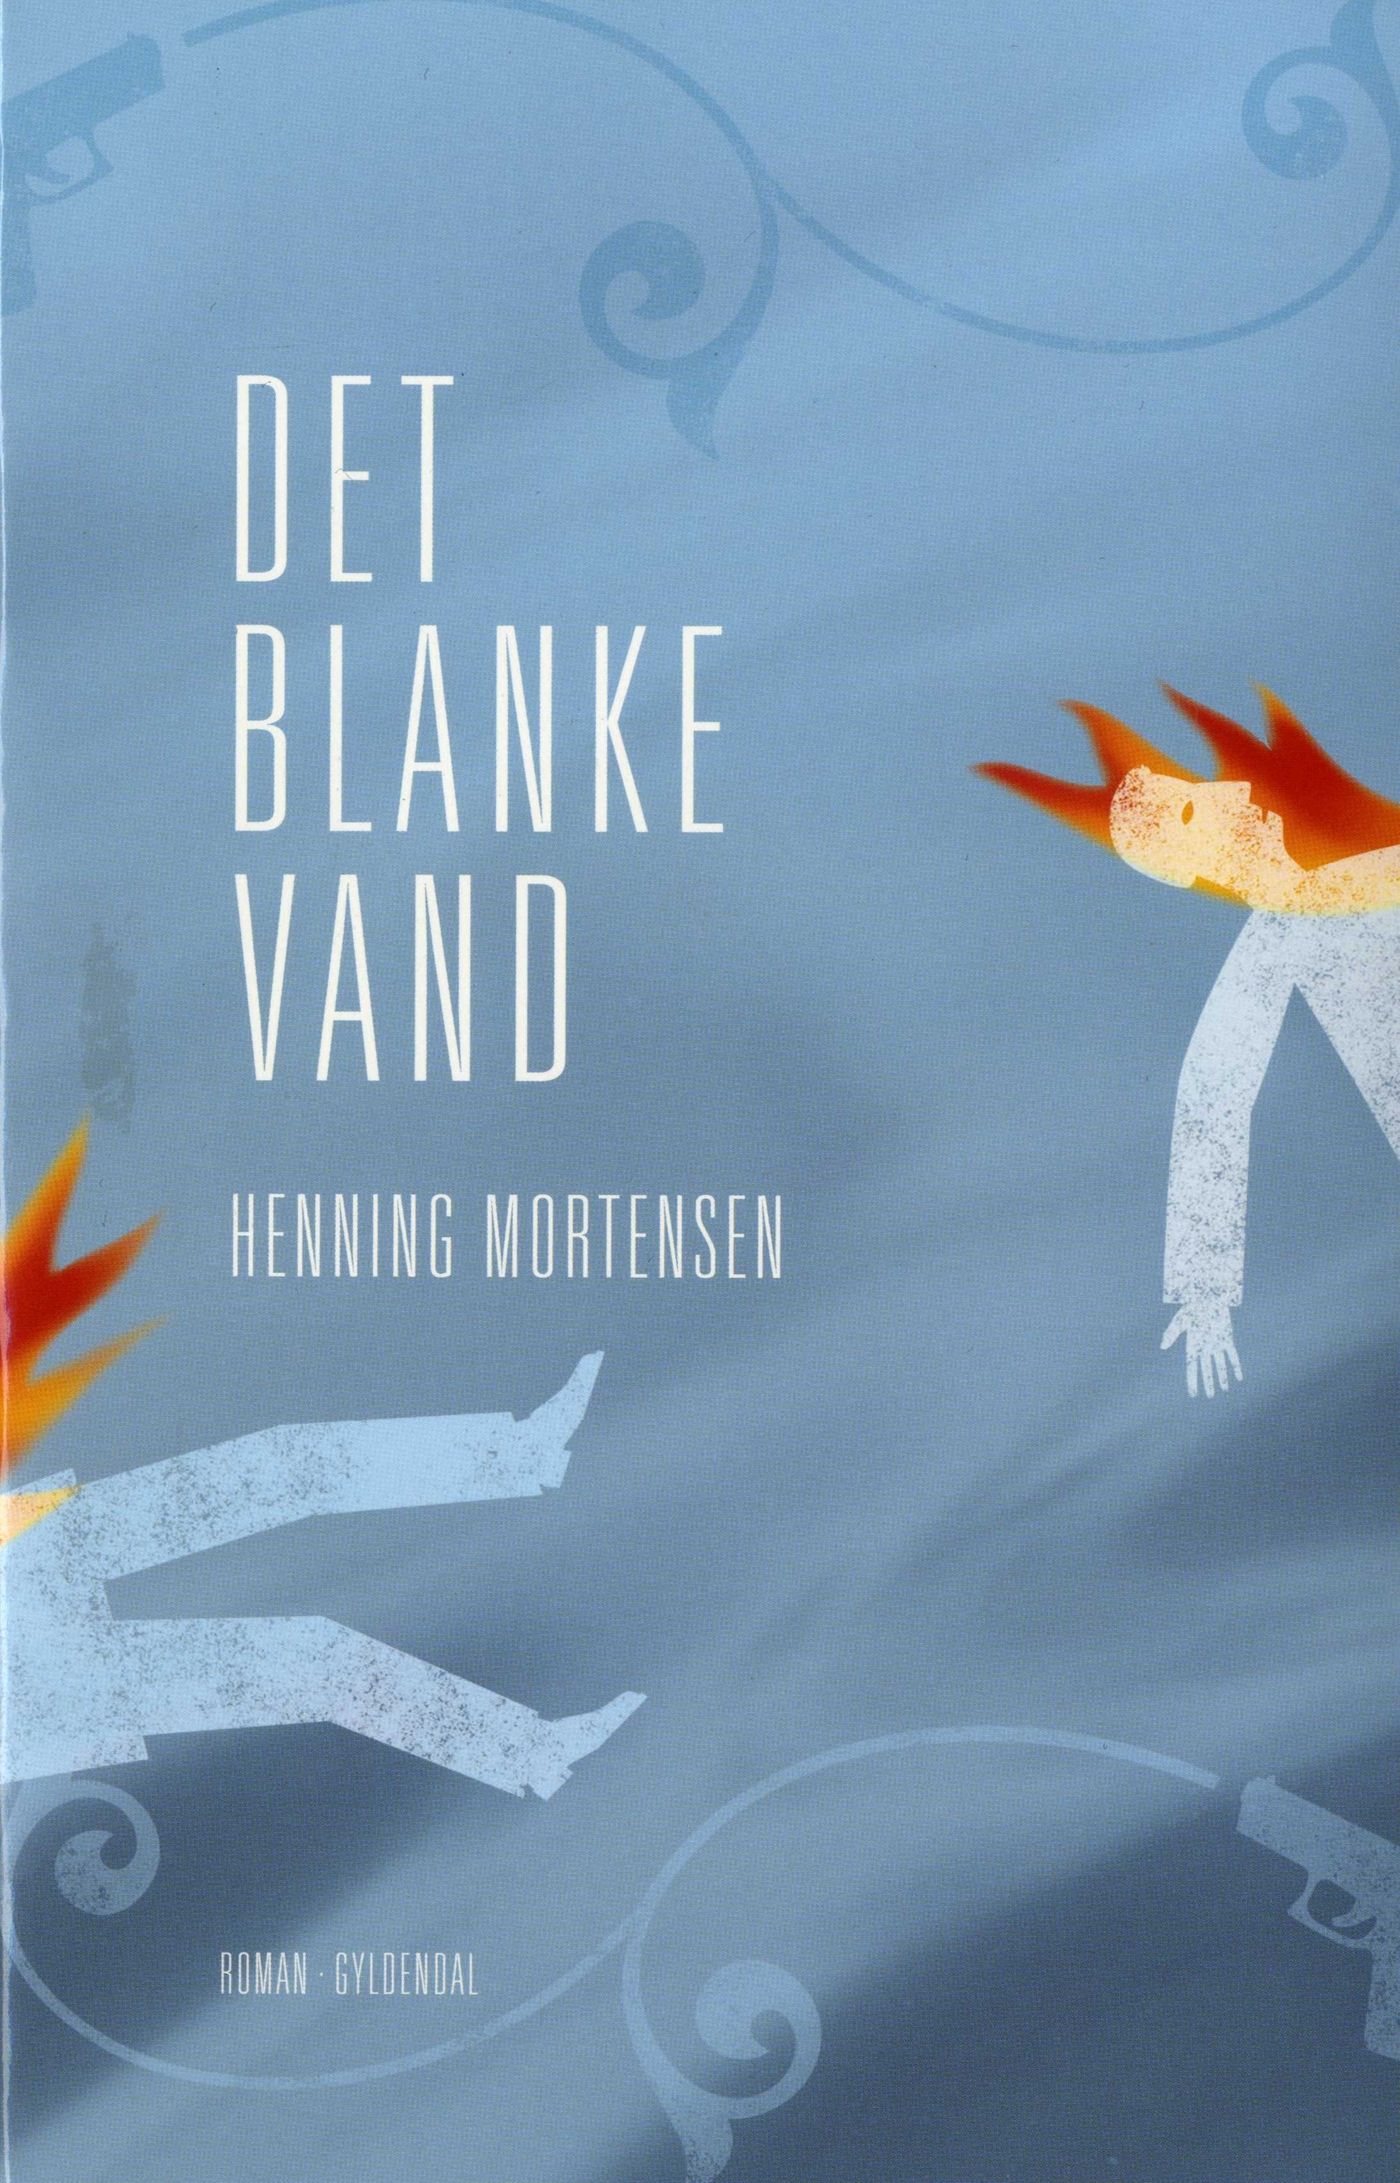 Det blanke vand, eBook by Henning Mortensen